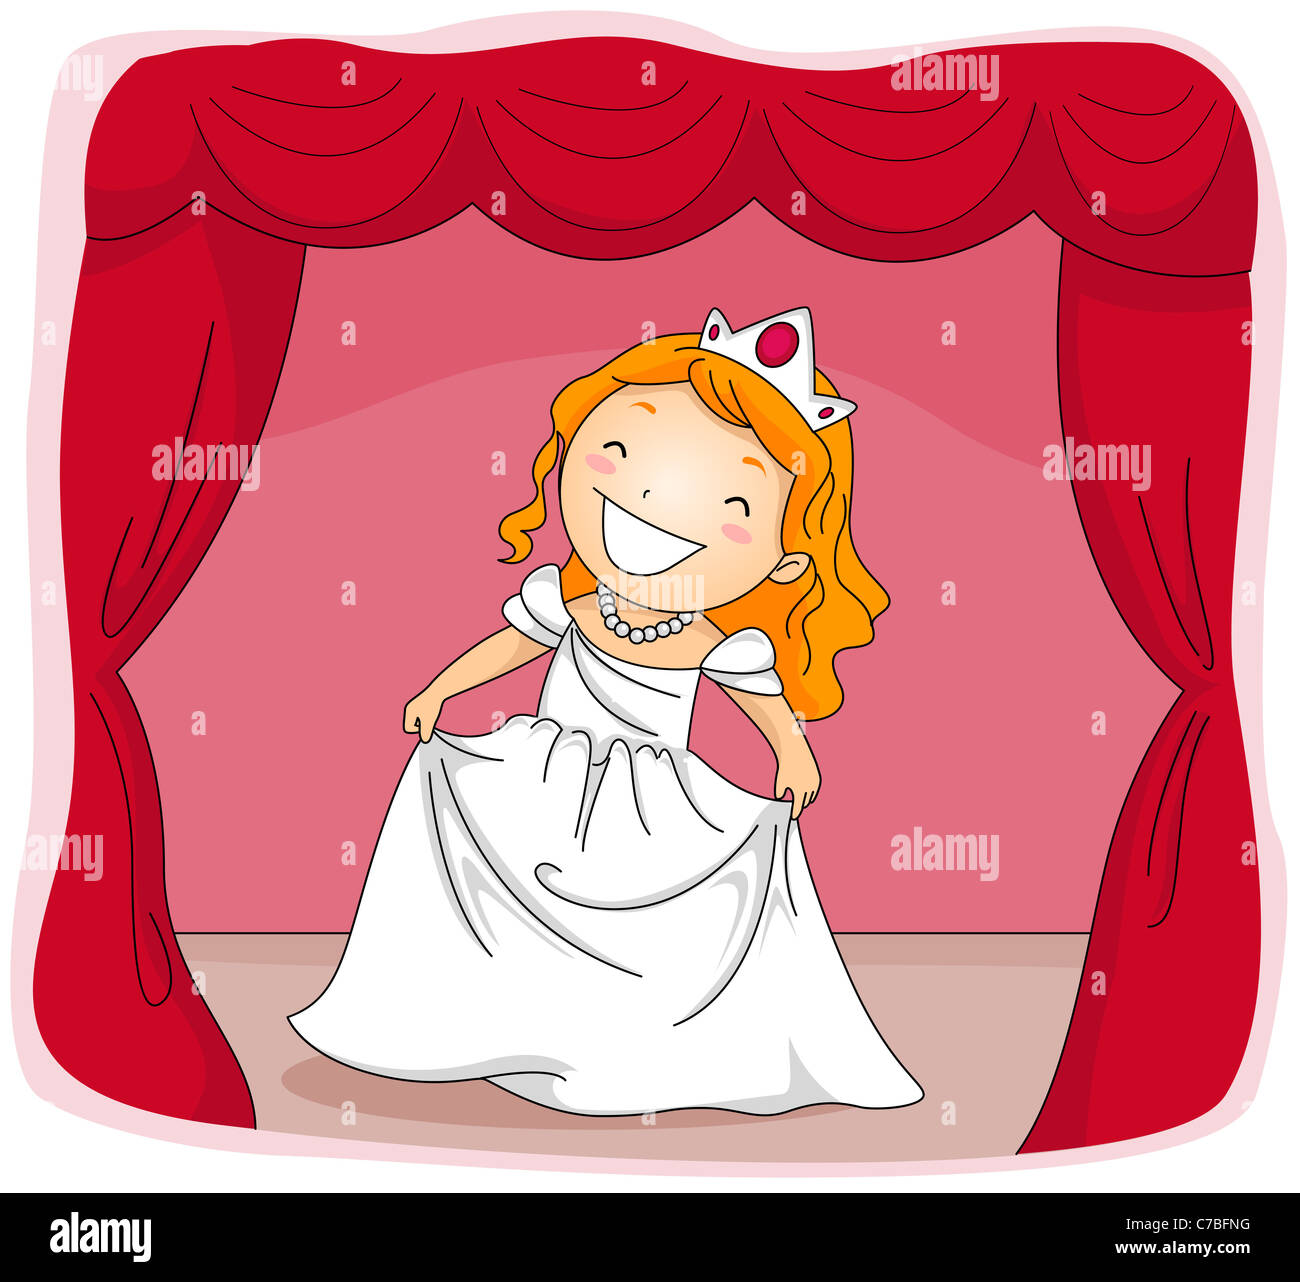 Ilustración de un niño vestido con un traje de Princesa actuando en una etapa de juego Foto de stock